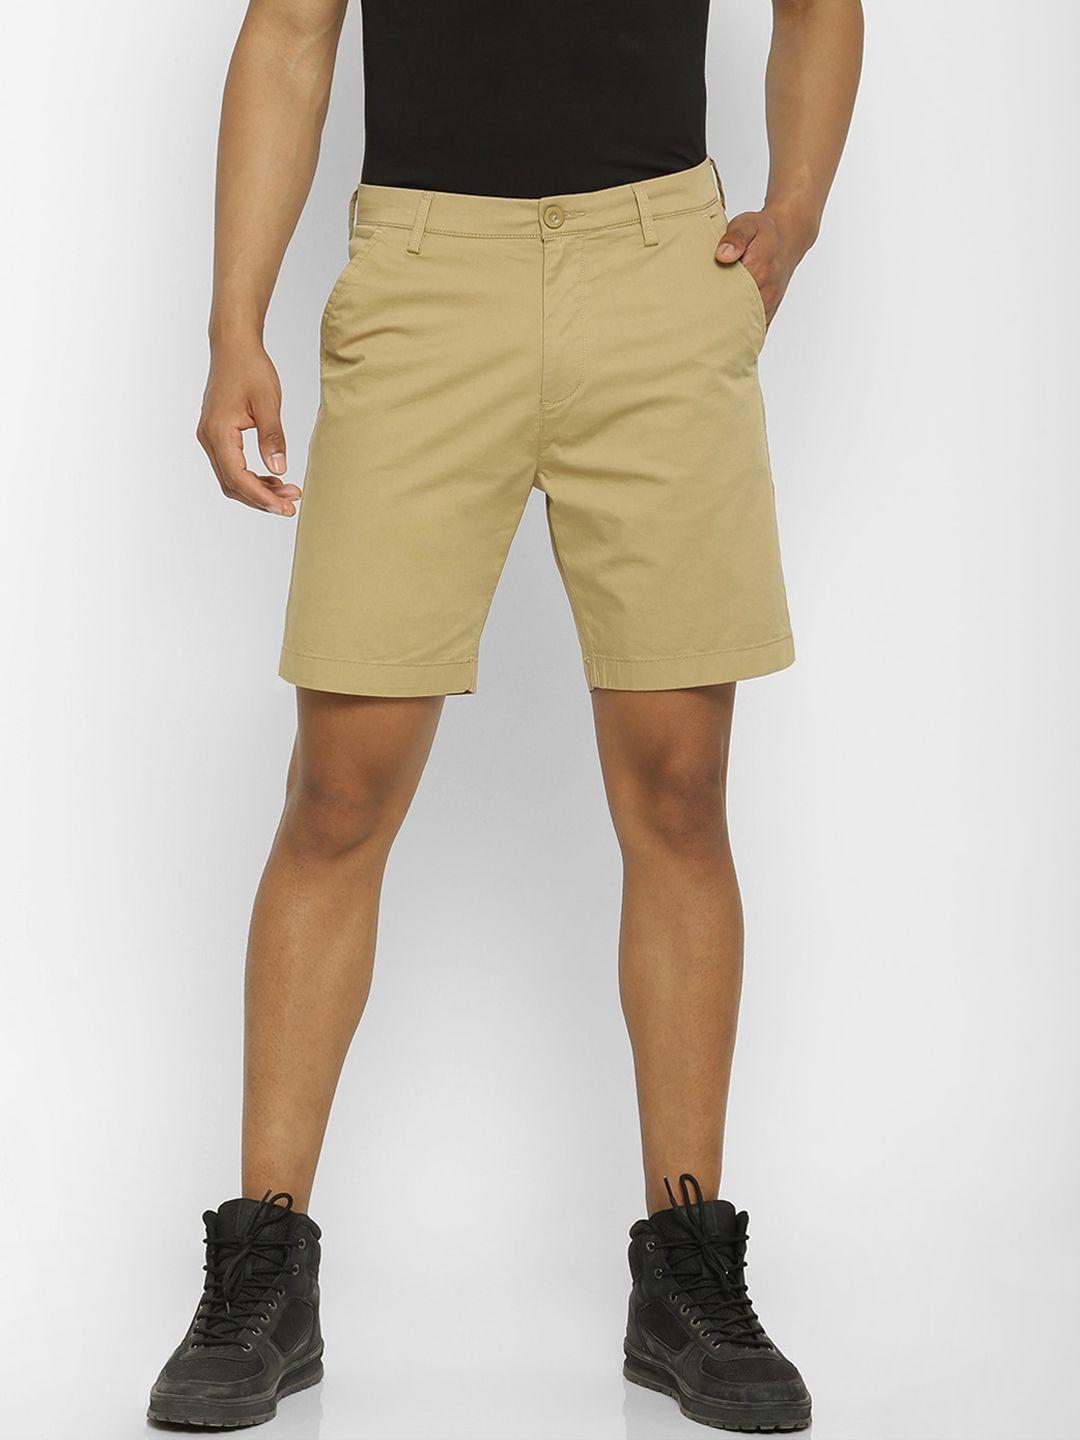 forever-21-men-brown-solid-regular-fit-regular-shorts